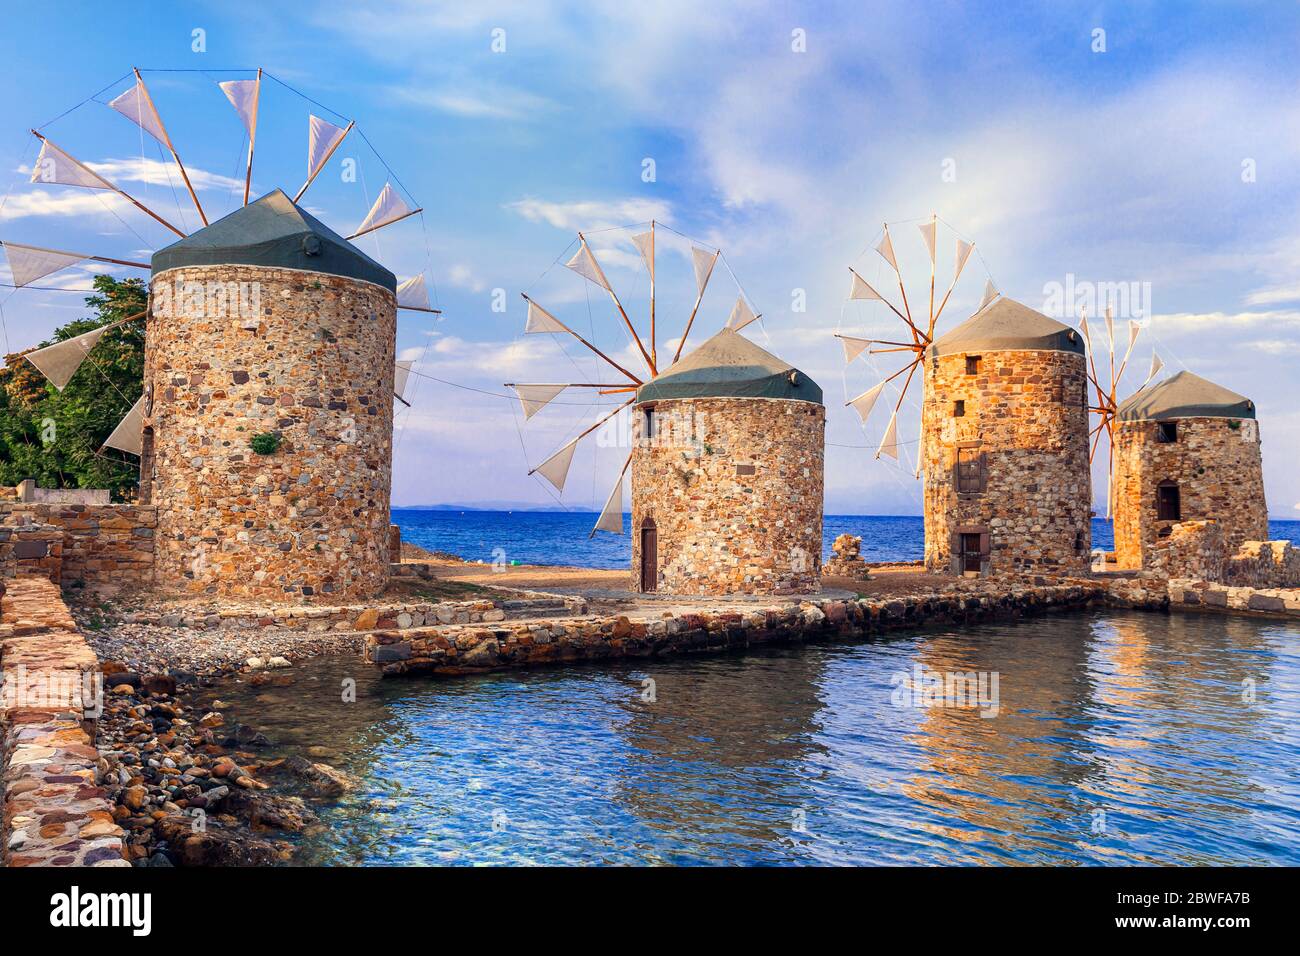 Authentische traditionelle griechische Landschaft - alte Windmühlen in der Nähe des Meeres - Wahrzeichen der Insel Chios Stockfoto